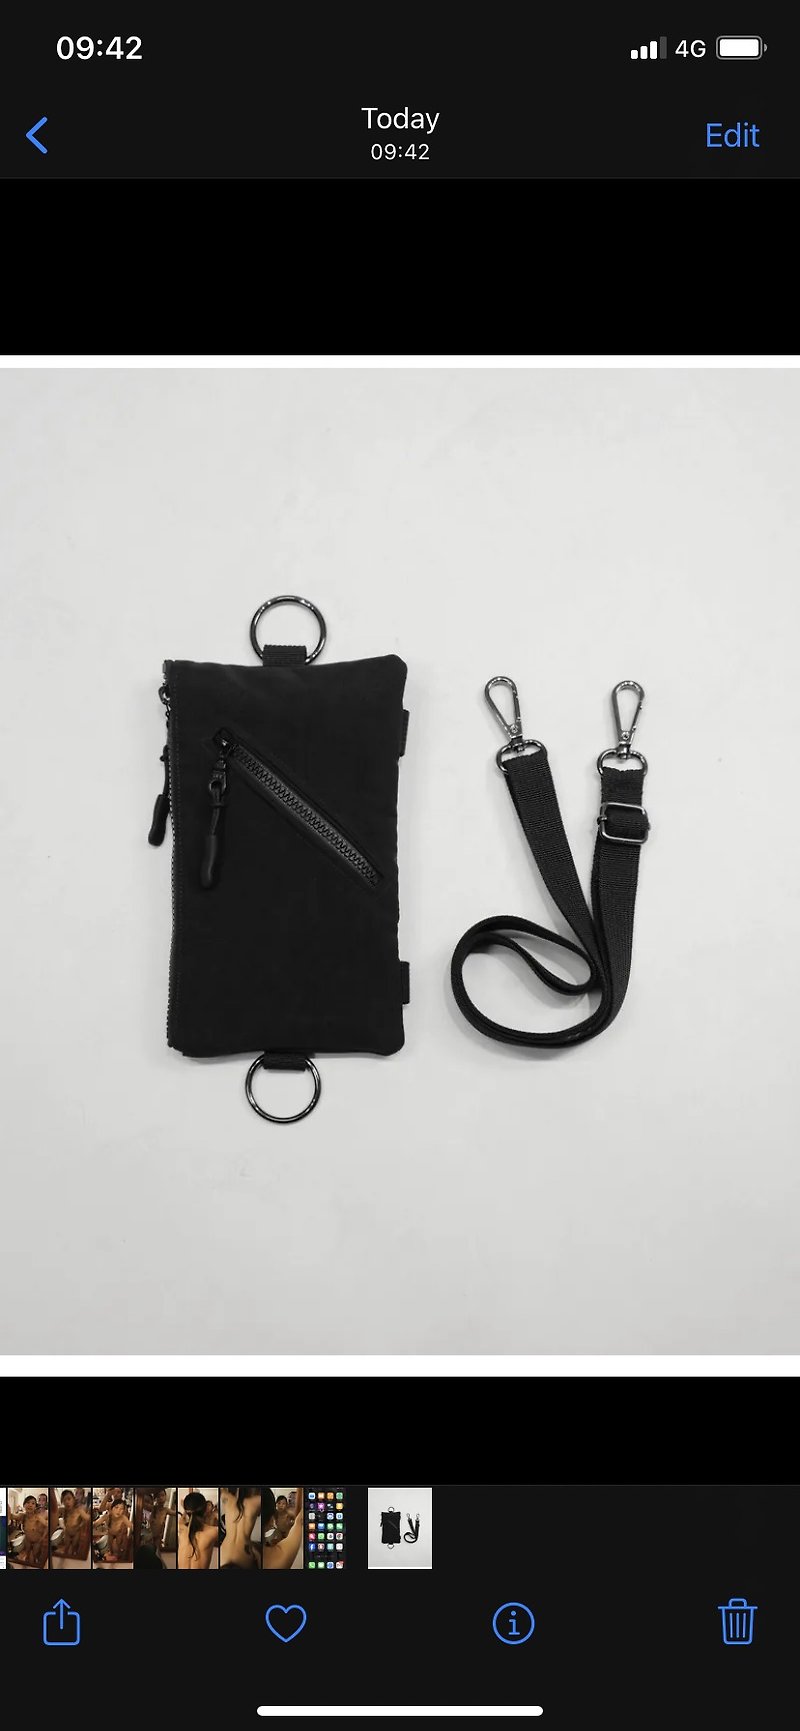 L impact Ame x MUKK joint diagonal zipper mobile phone bag - Clutch Bags - Waterproof Material Black